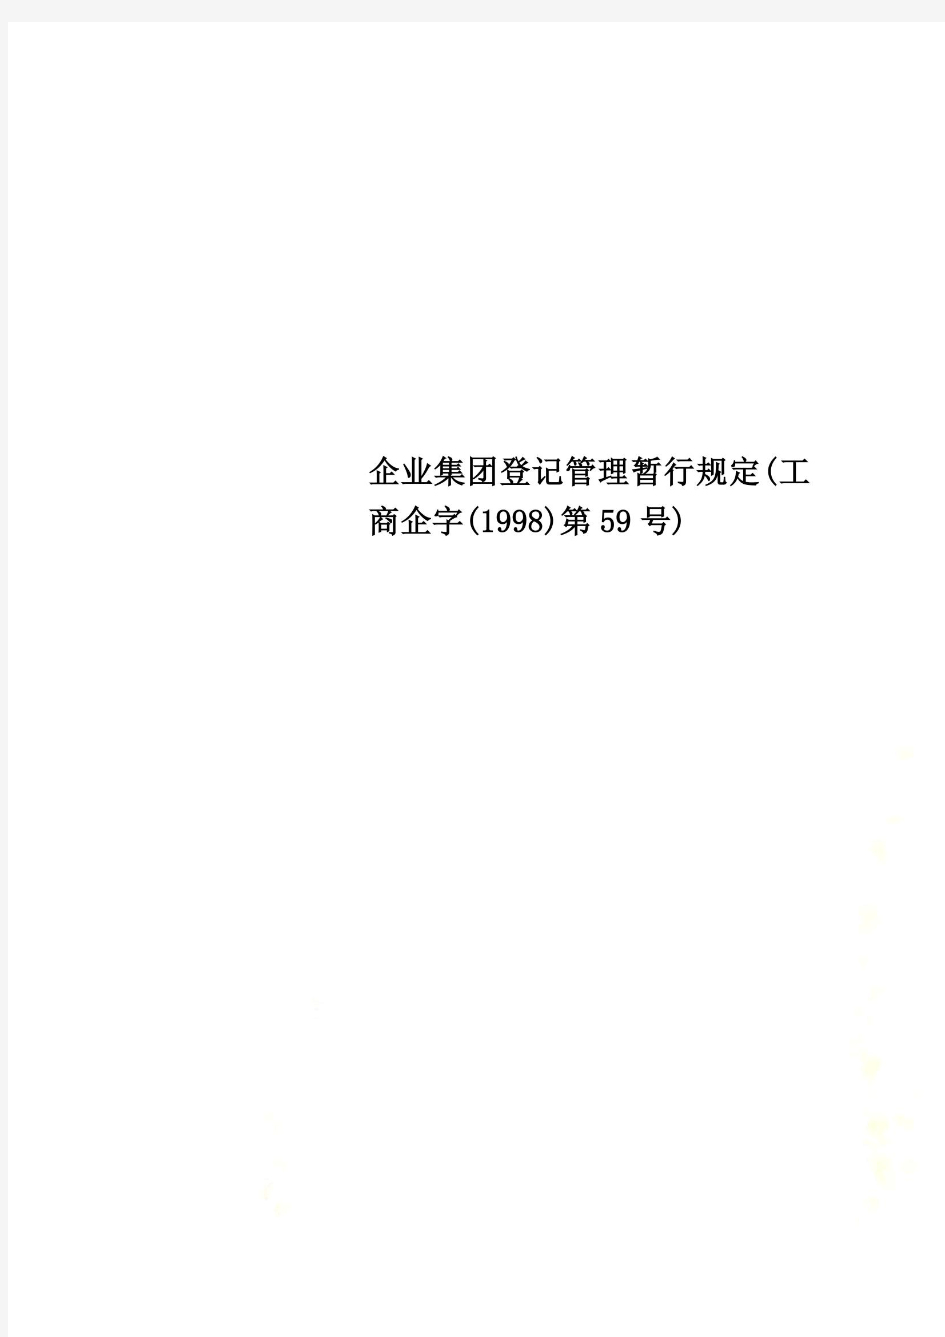 企业集团登记管理暂行规定(工商企字(1998)第59号)